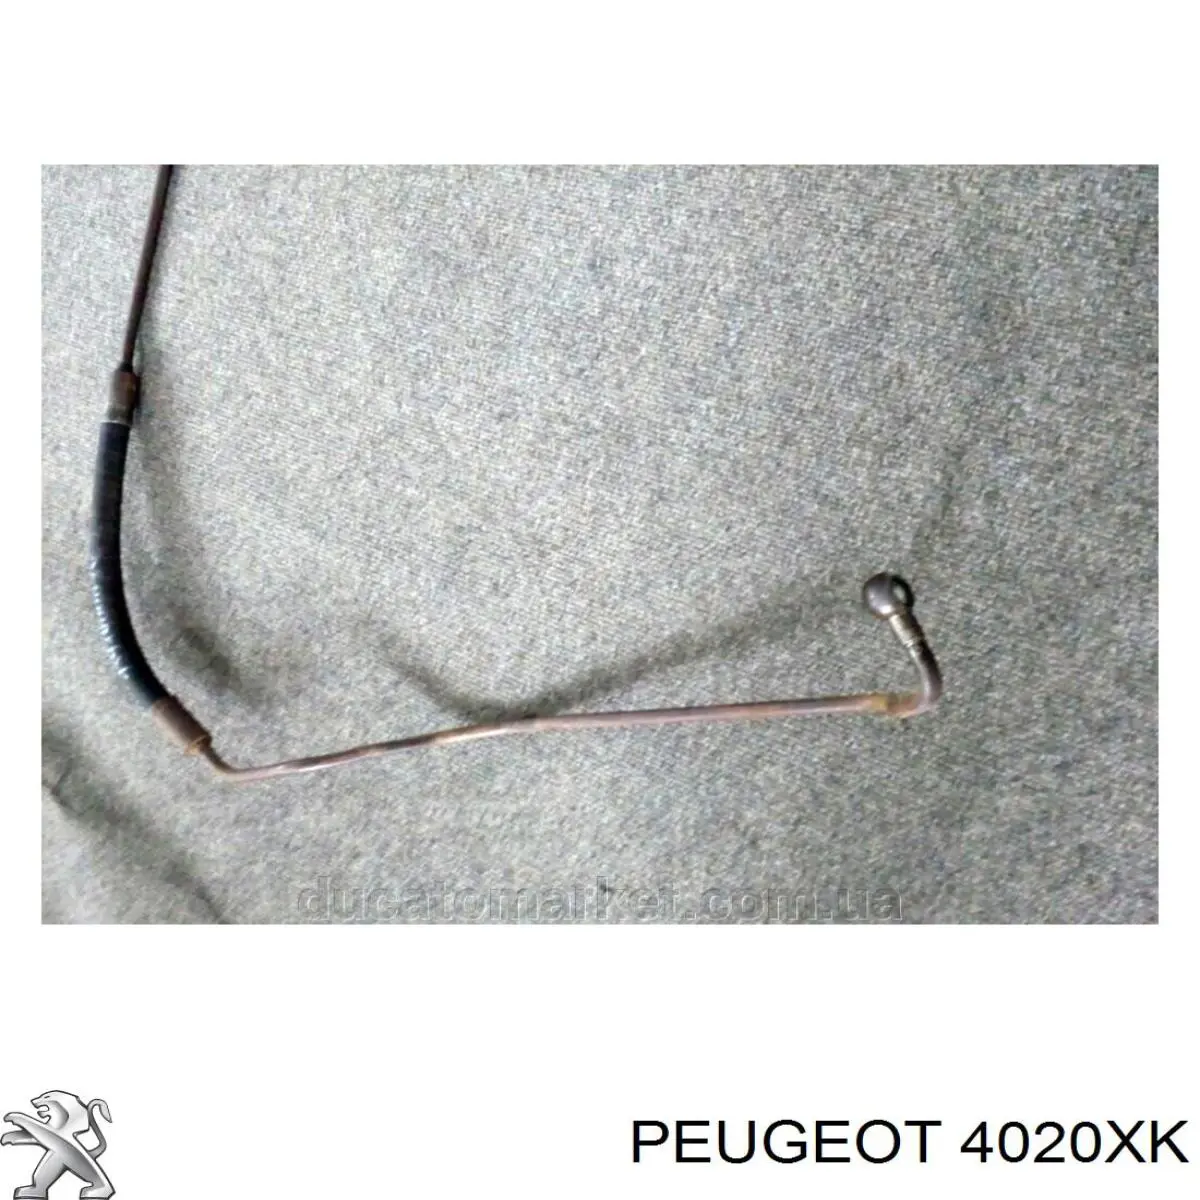 Mangueira da Direção hidrâulica assistida de pressão alta desde a bomba até a régua (do mecanismo) para Peugeot Boxer (230)